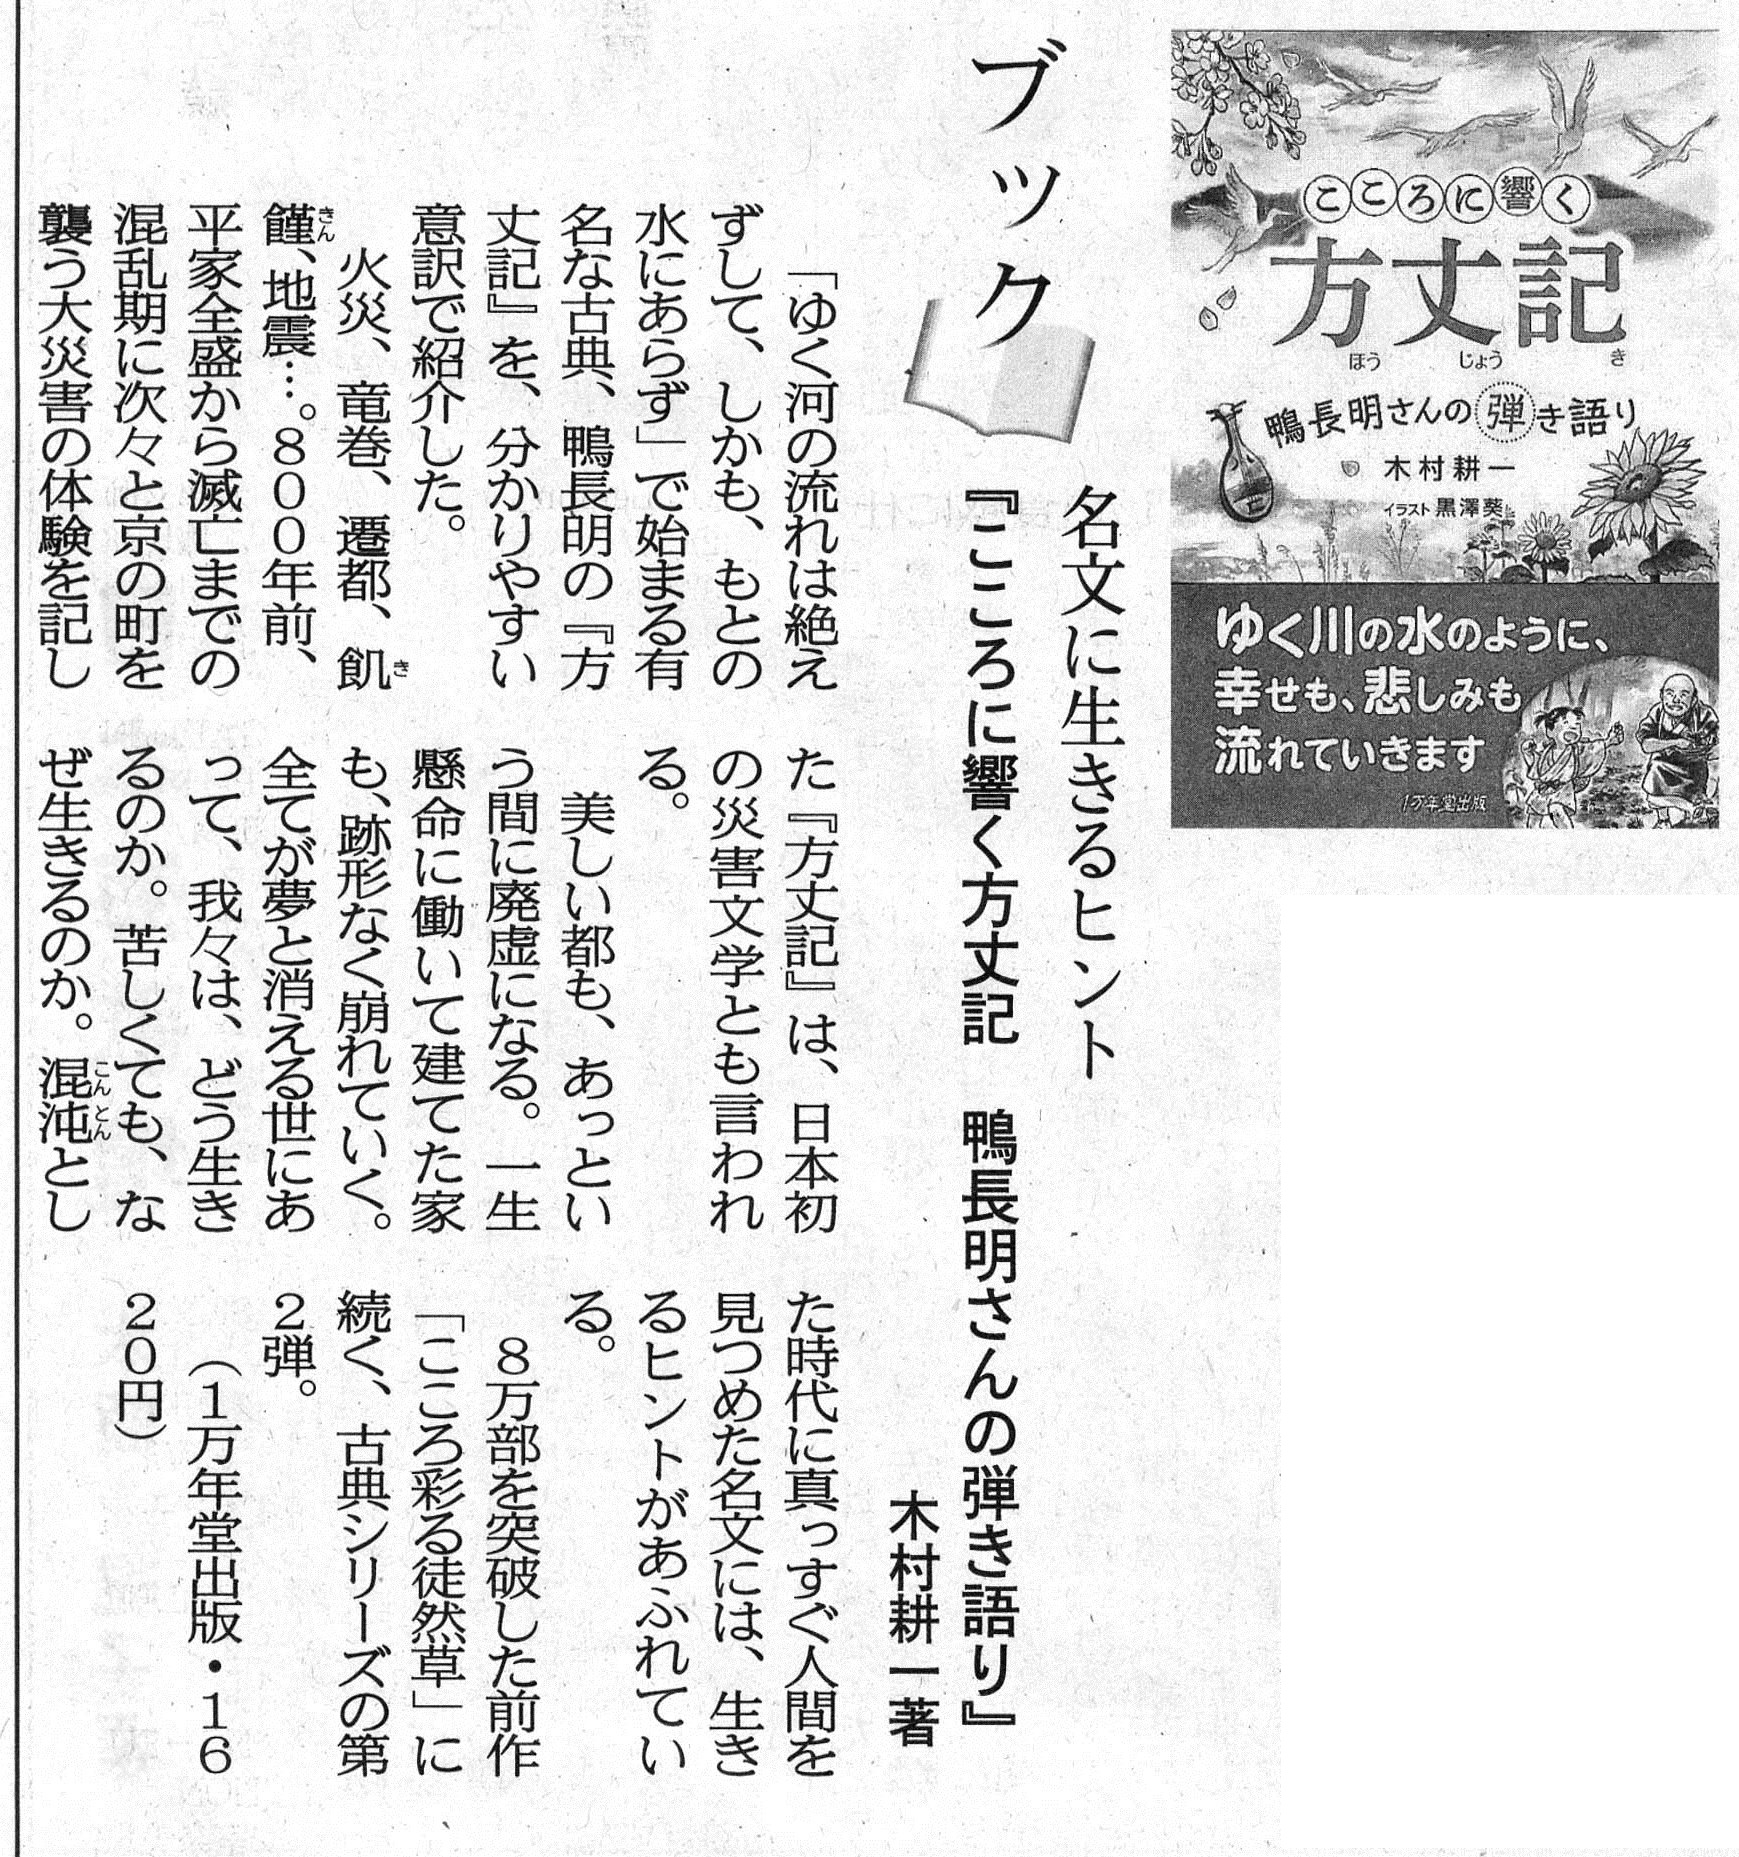 日本海新聞、大阪日日新聞に『こころに響く方丈記』の書評が掲載されましたの画像1